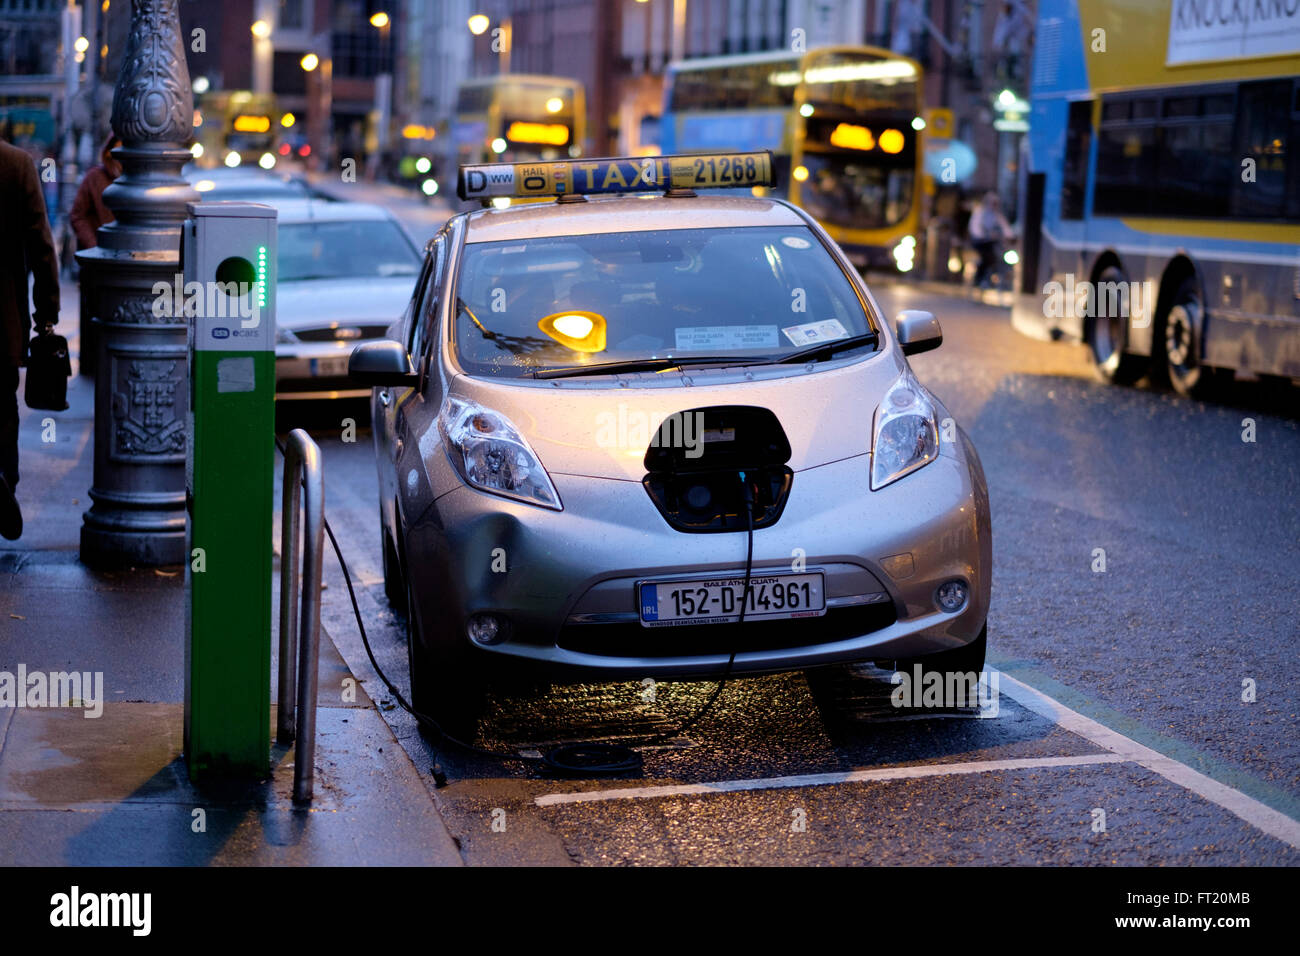 Elektro-Taxi Nissan Leaf Auto eingesteckt zum Aufladen an der Ladestation auf einer Straße in Dublin, Irland, Europa Stockfoto